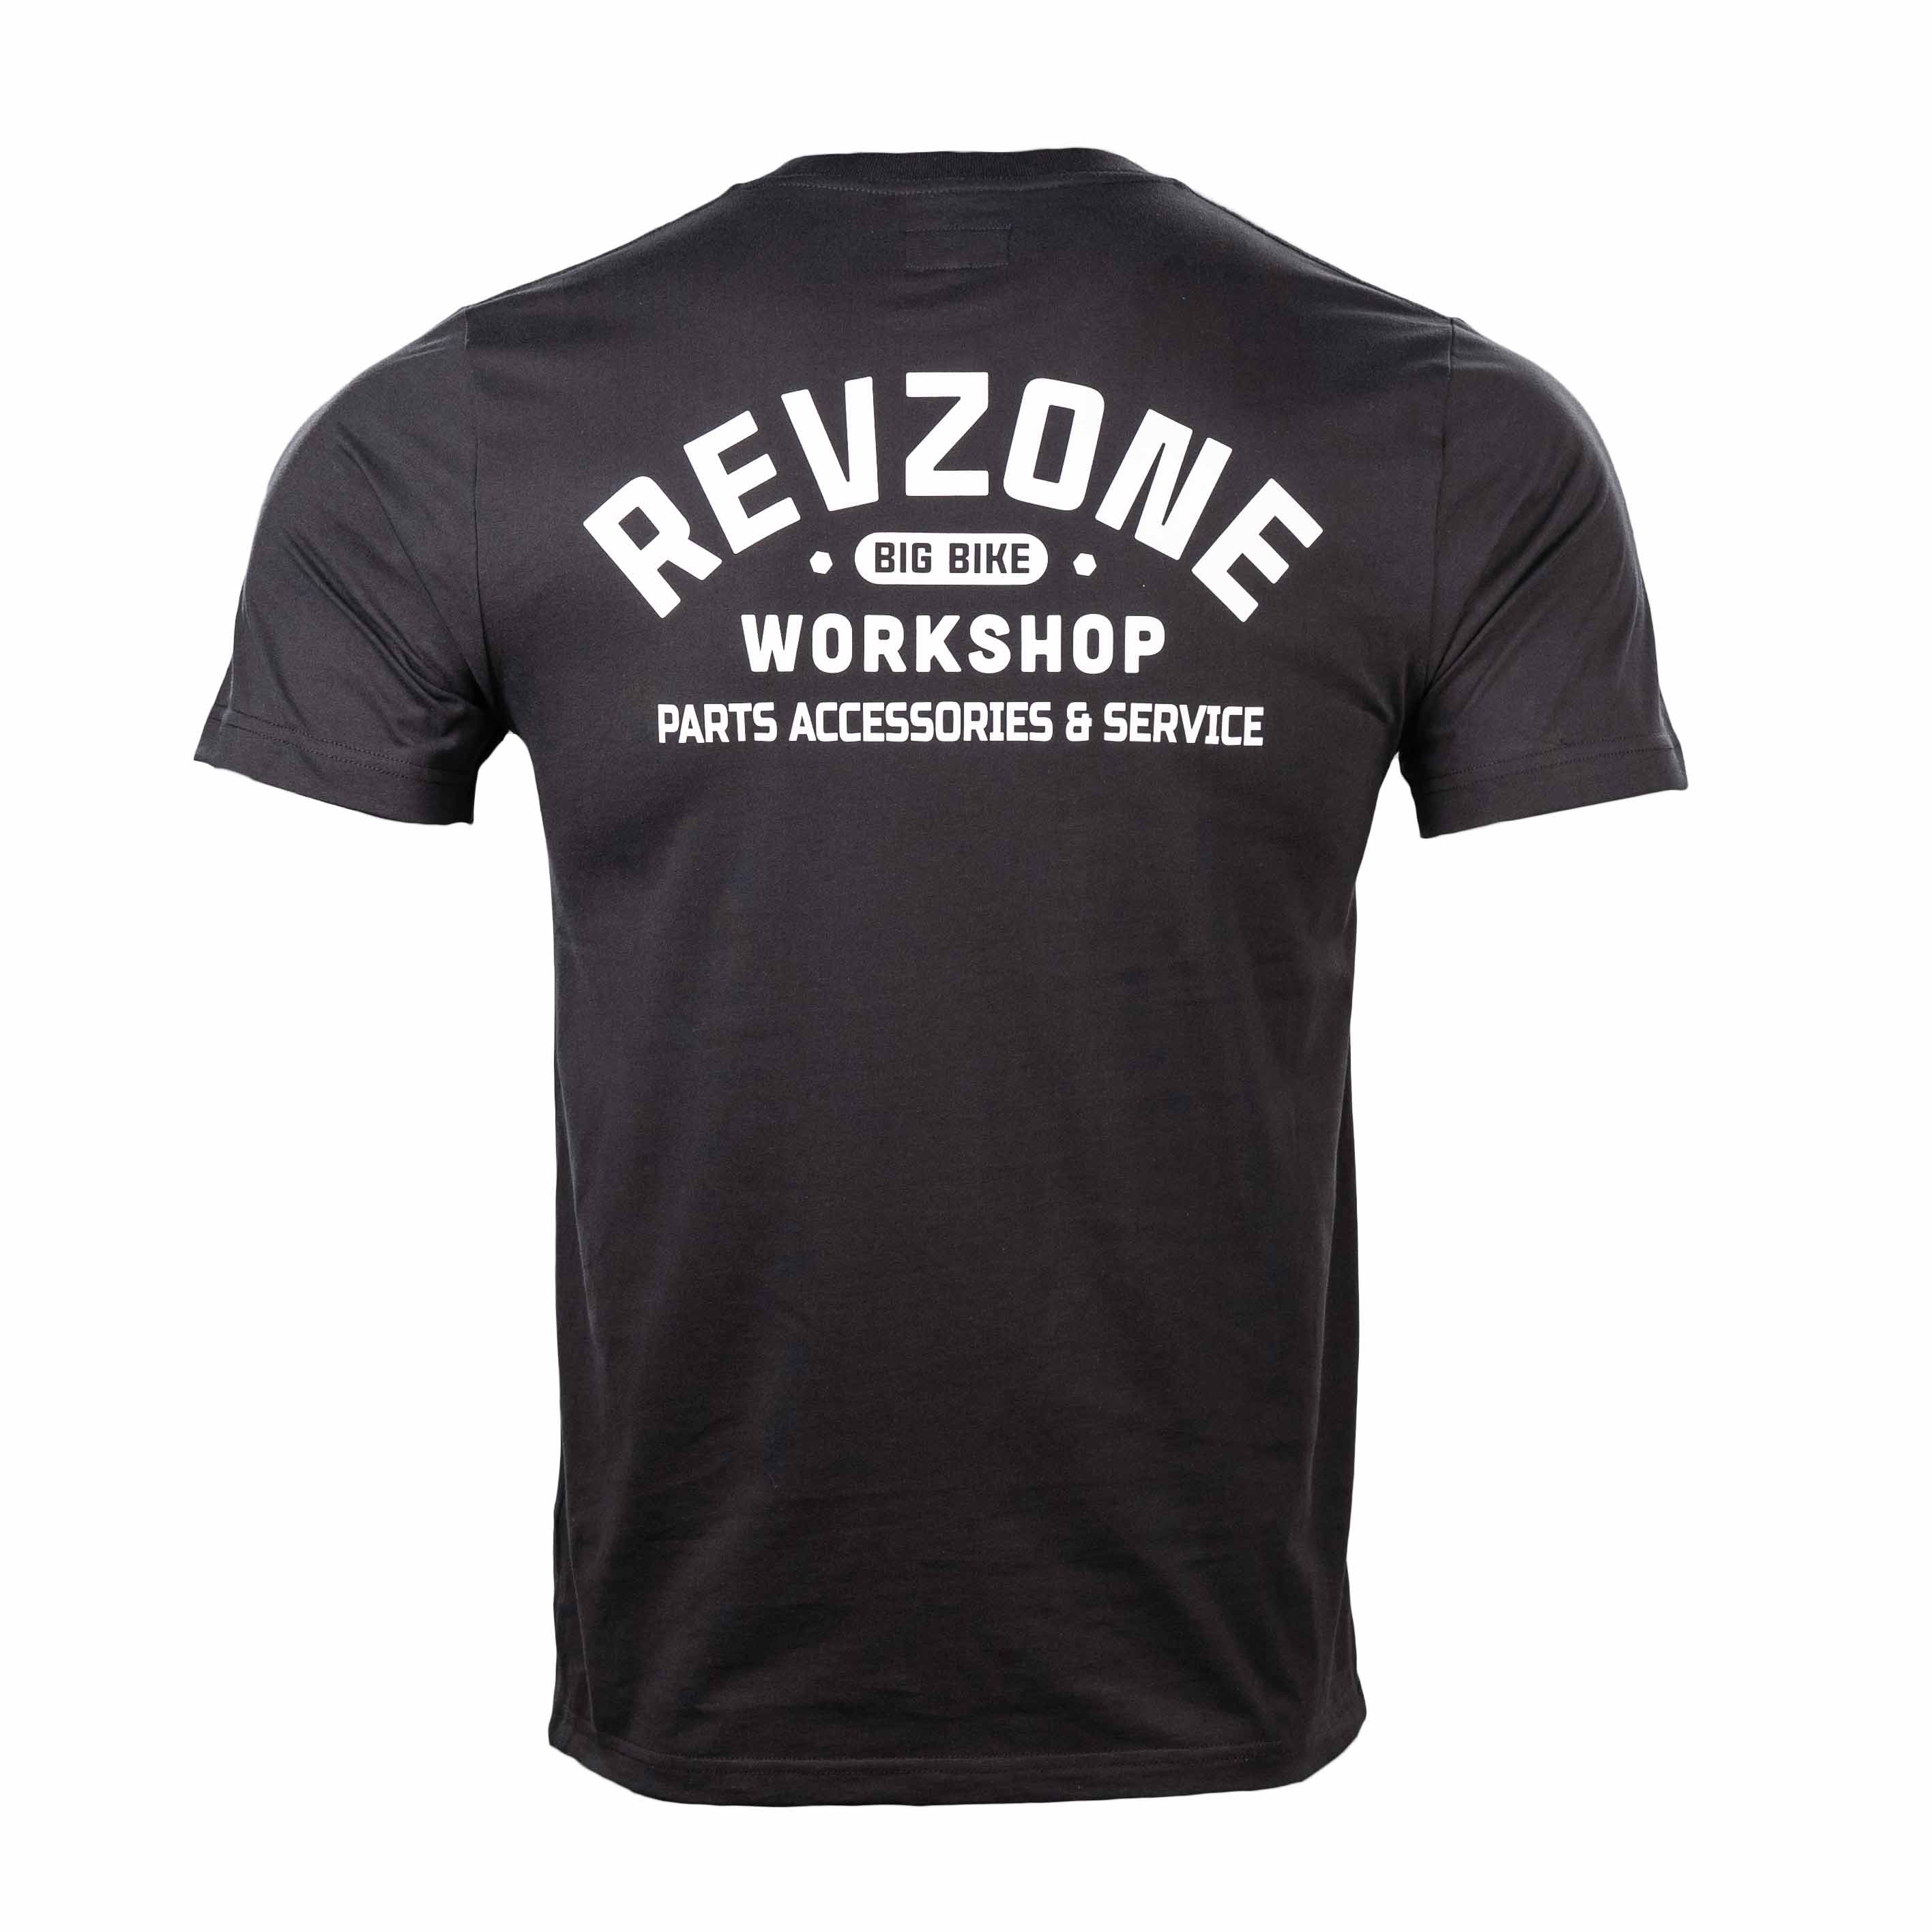 Áo Thun Cổ Tròn Logo Revzone Workshop PA & Service